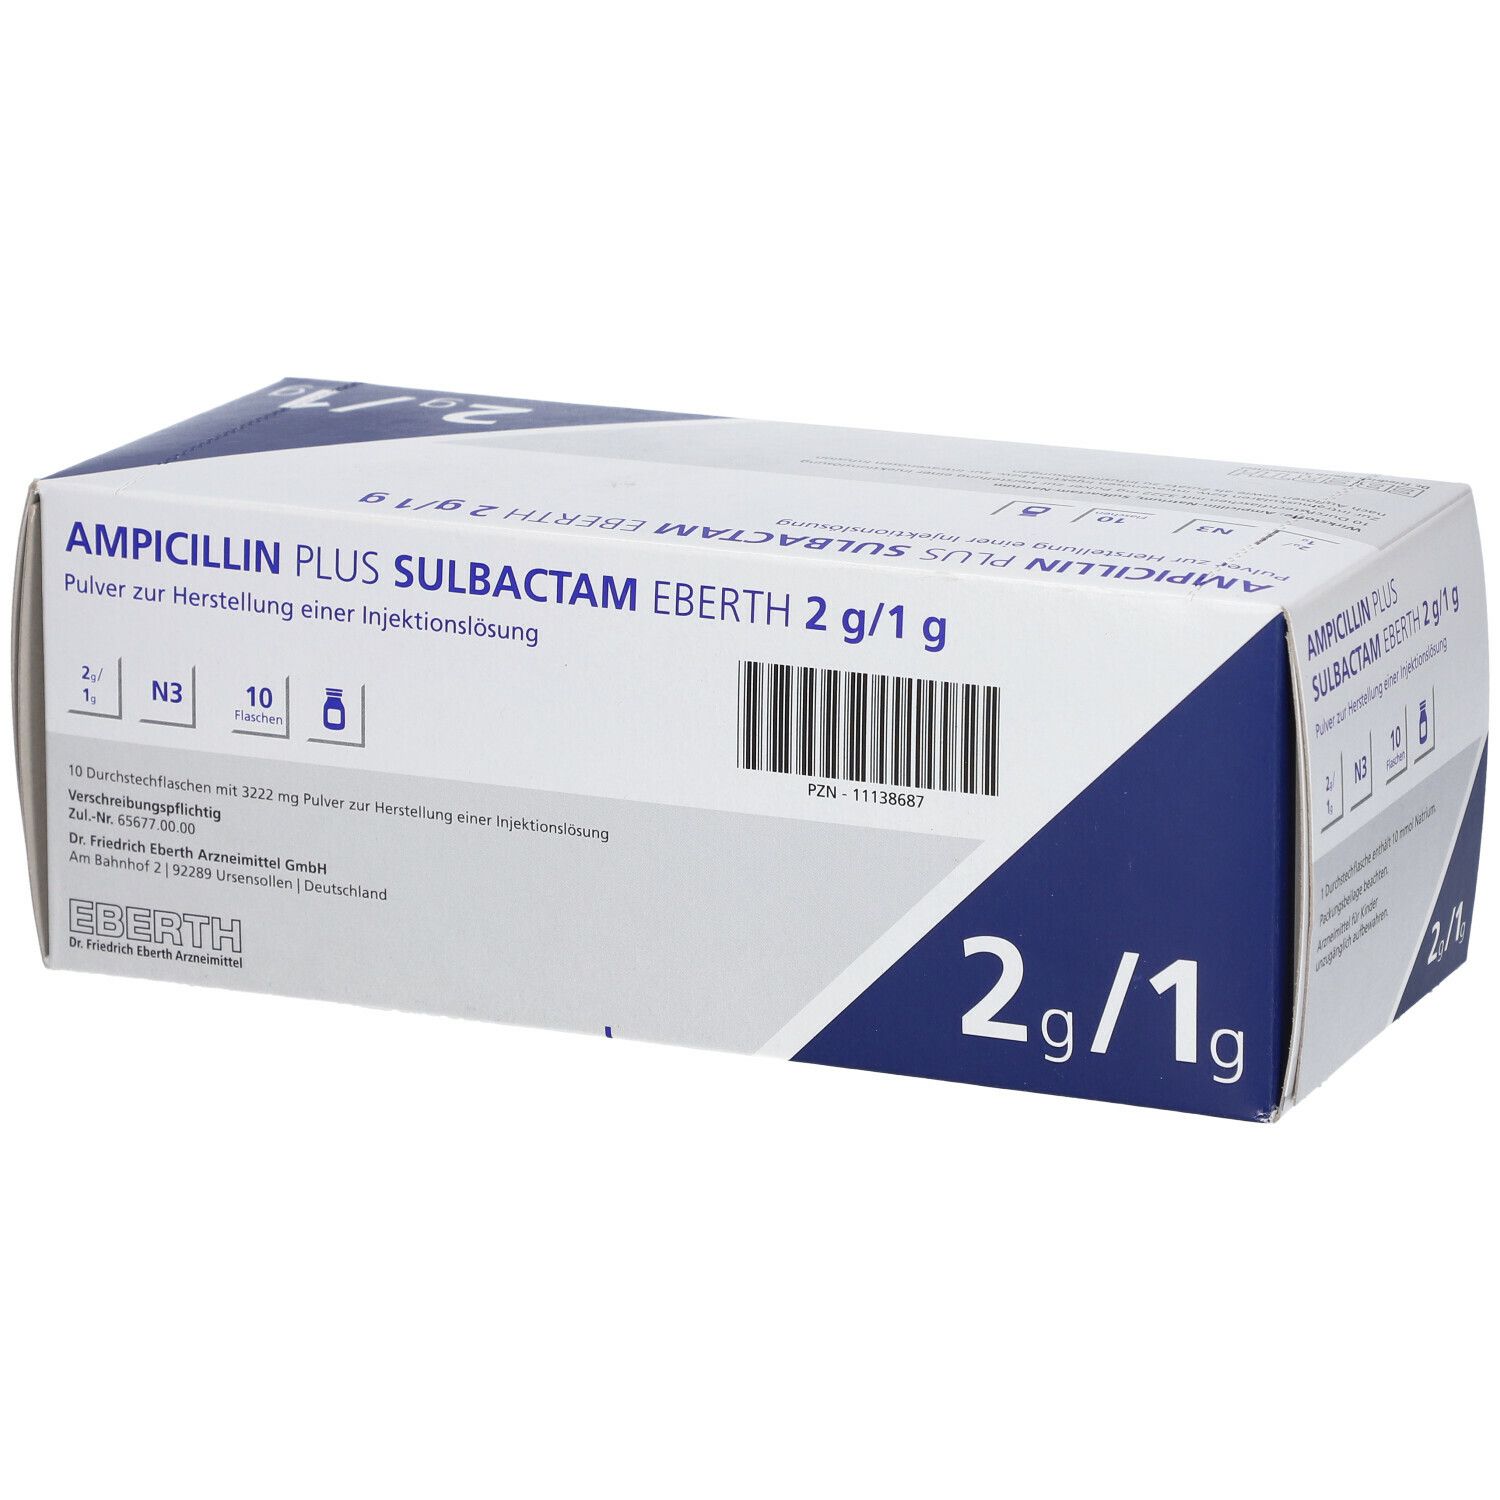 Ampicillin Plus Sulbactam Eberth 2 g/1 g